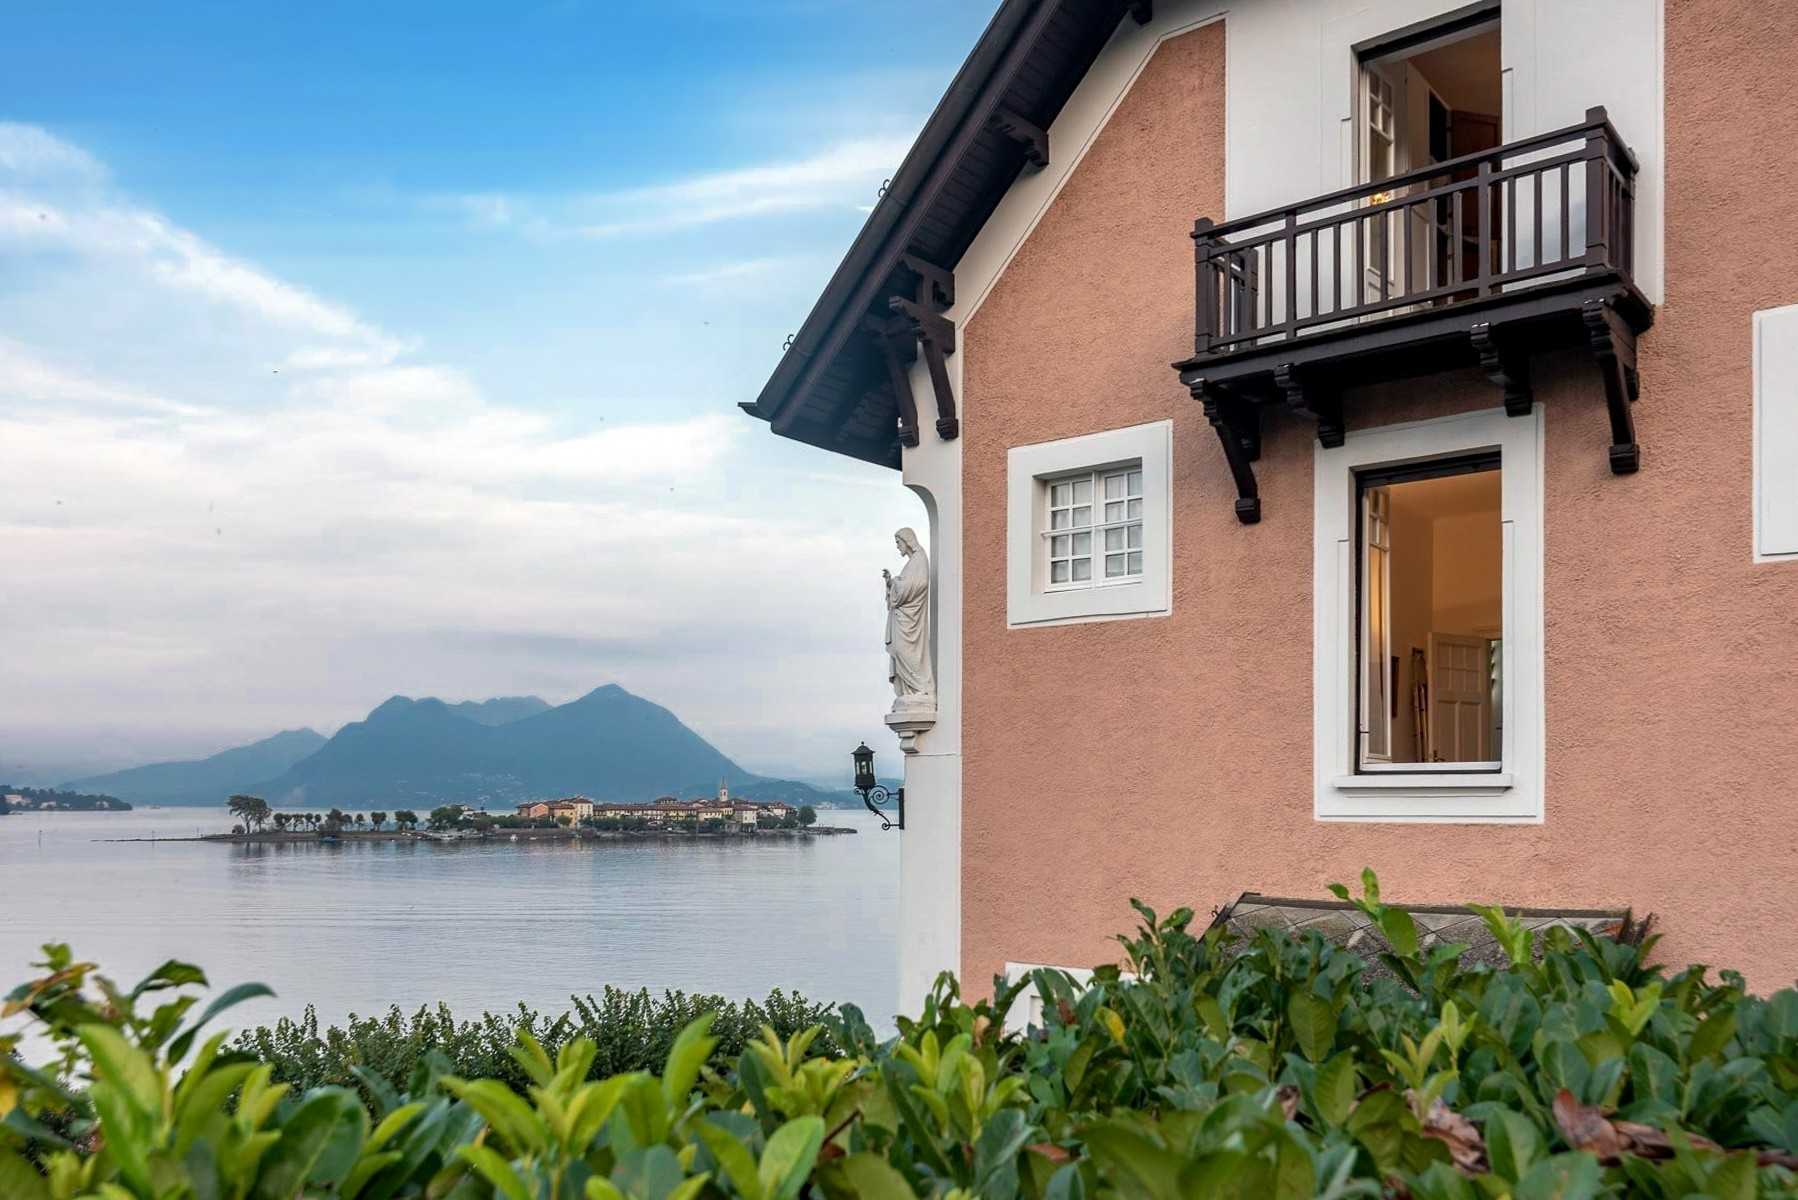 Photos Period villa in Baveno on Lake Maggiore with boat dock